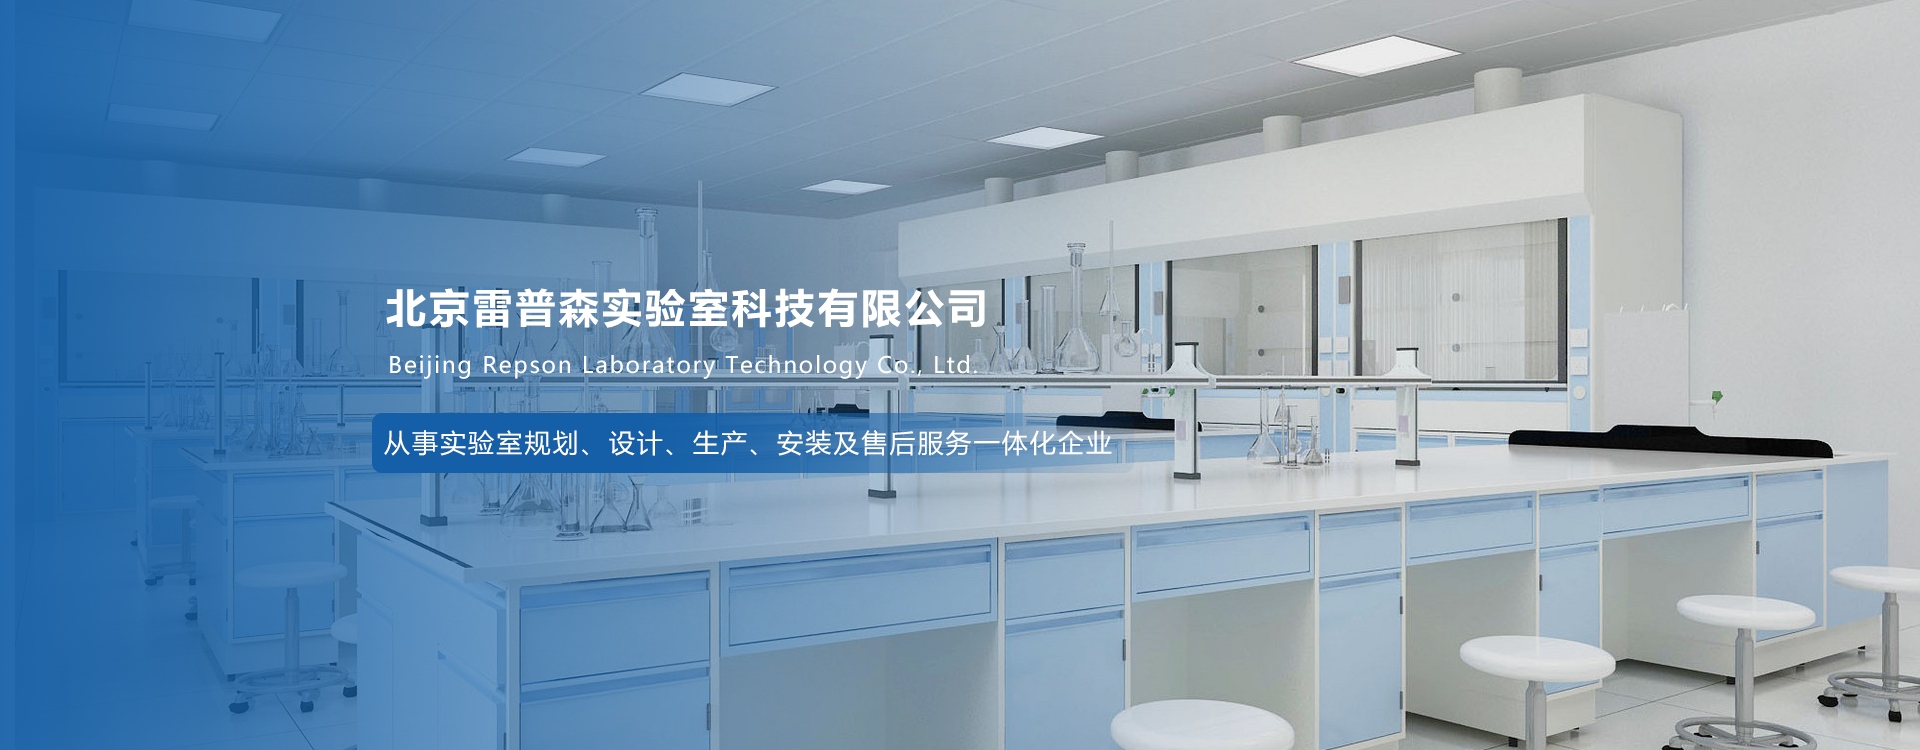 北京雷普森实验室科技有限公司与我司签订网站建设协议